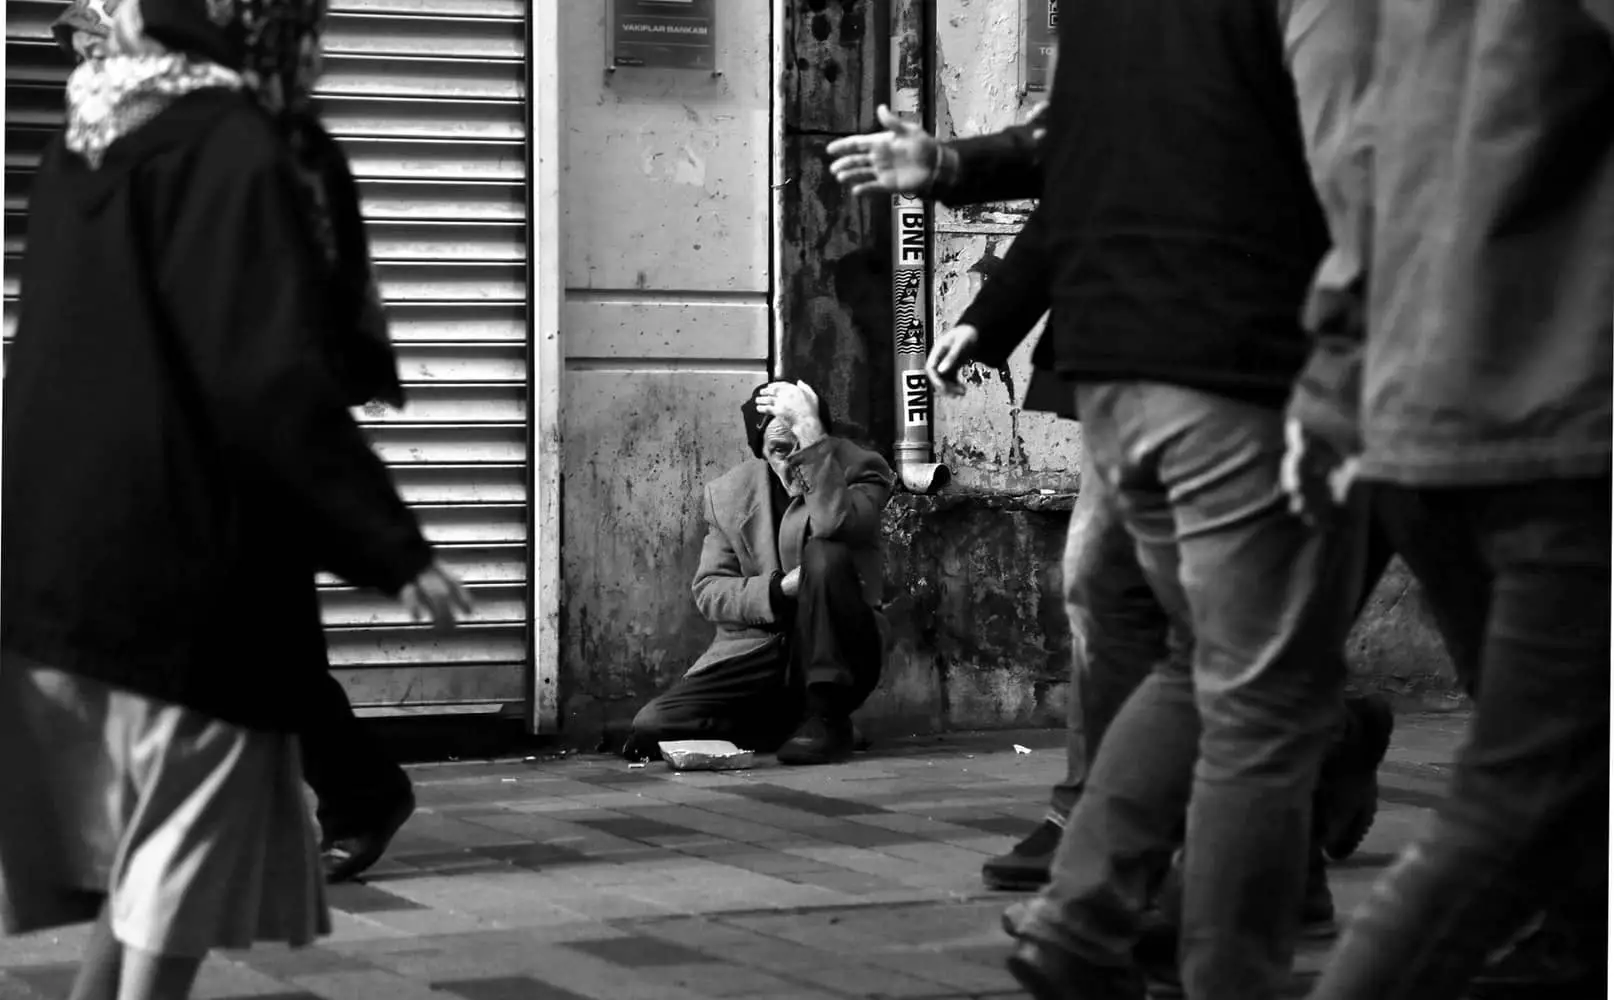 Homeless man sitting on the street asking for money